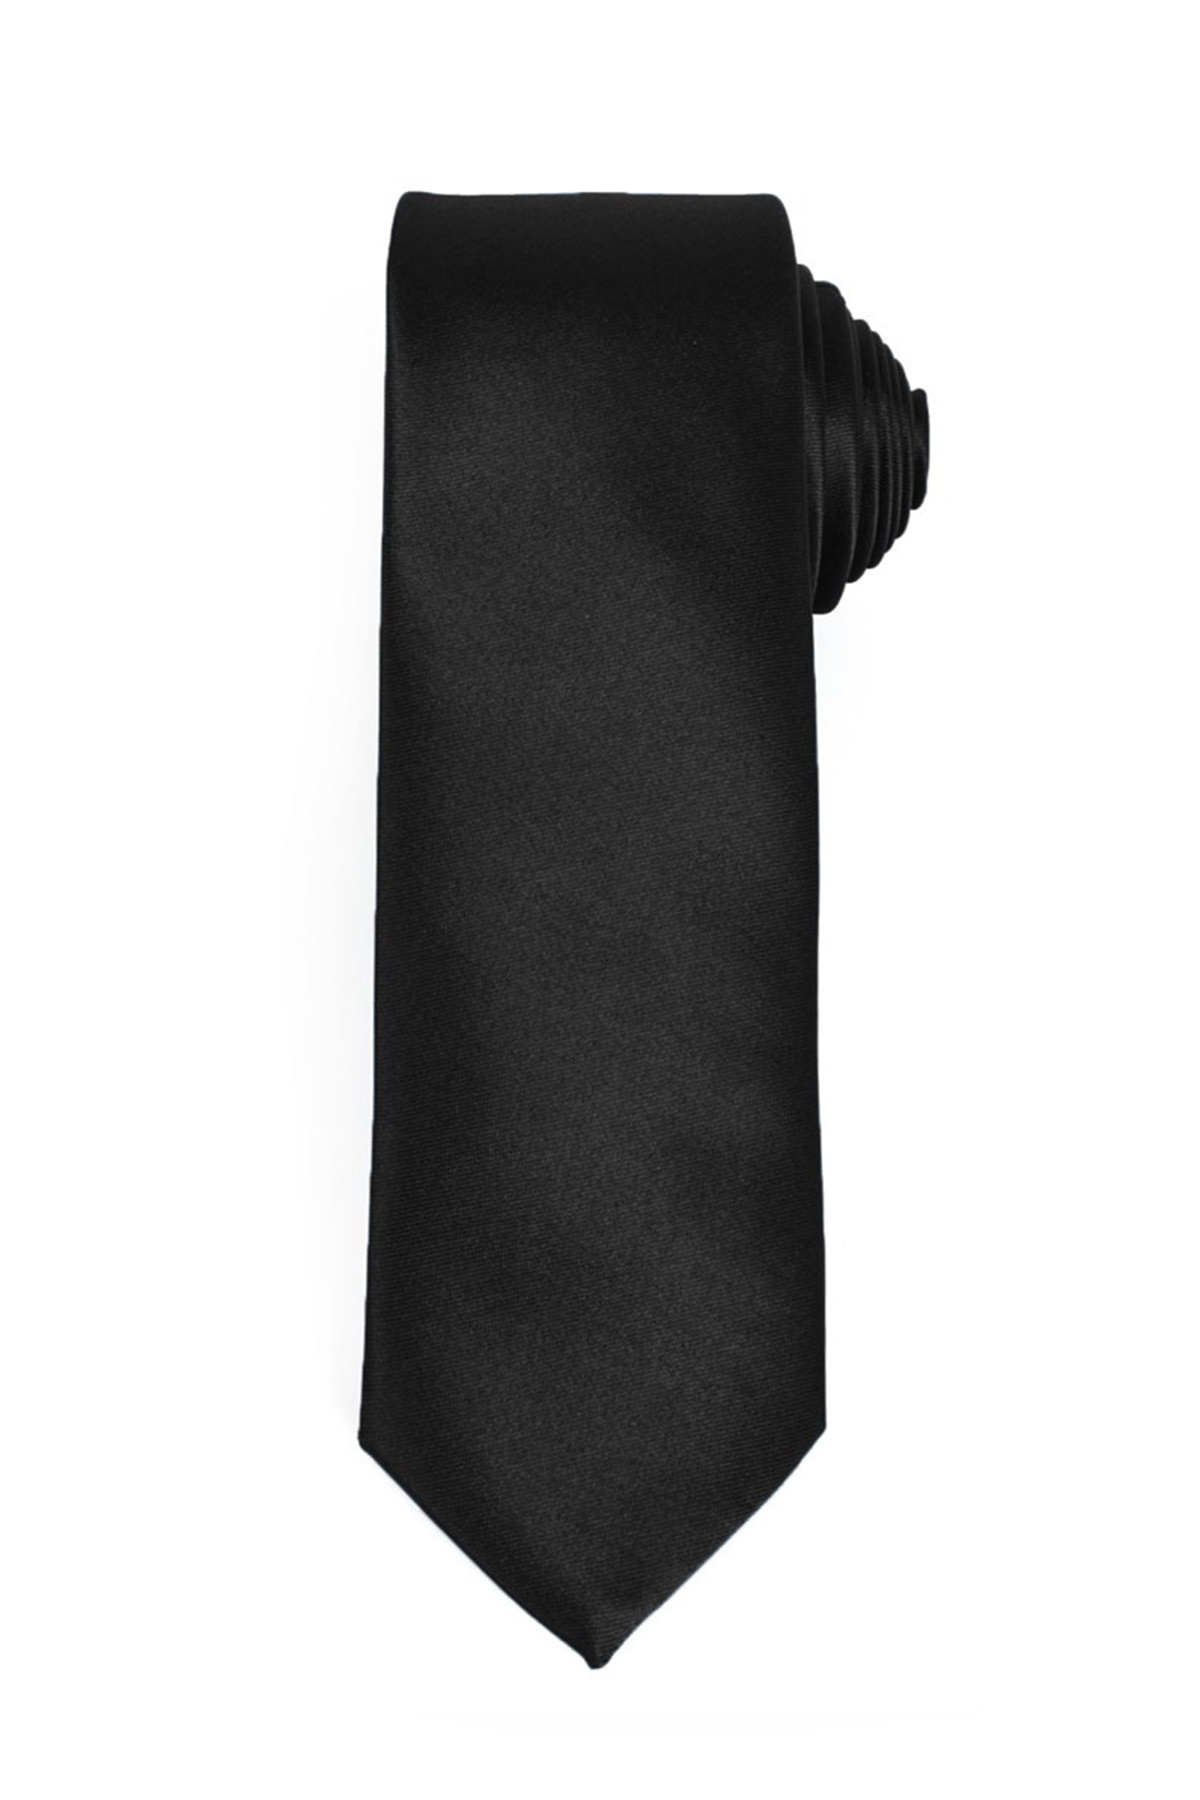 Fekete színű vékony nyakkendő